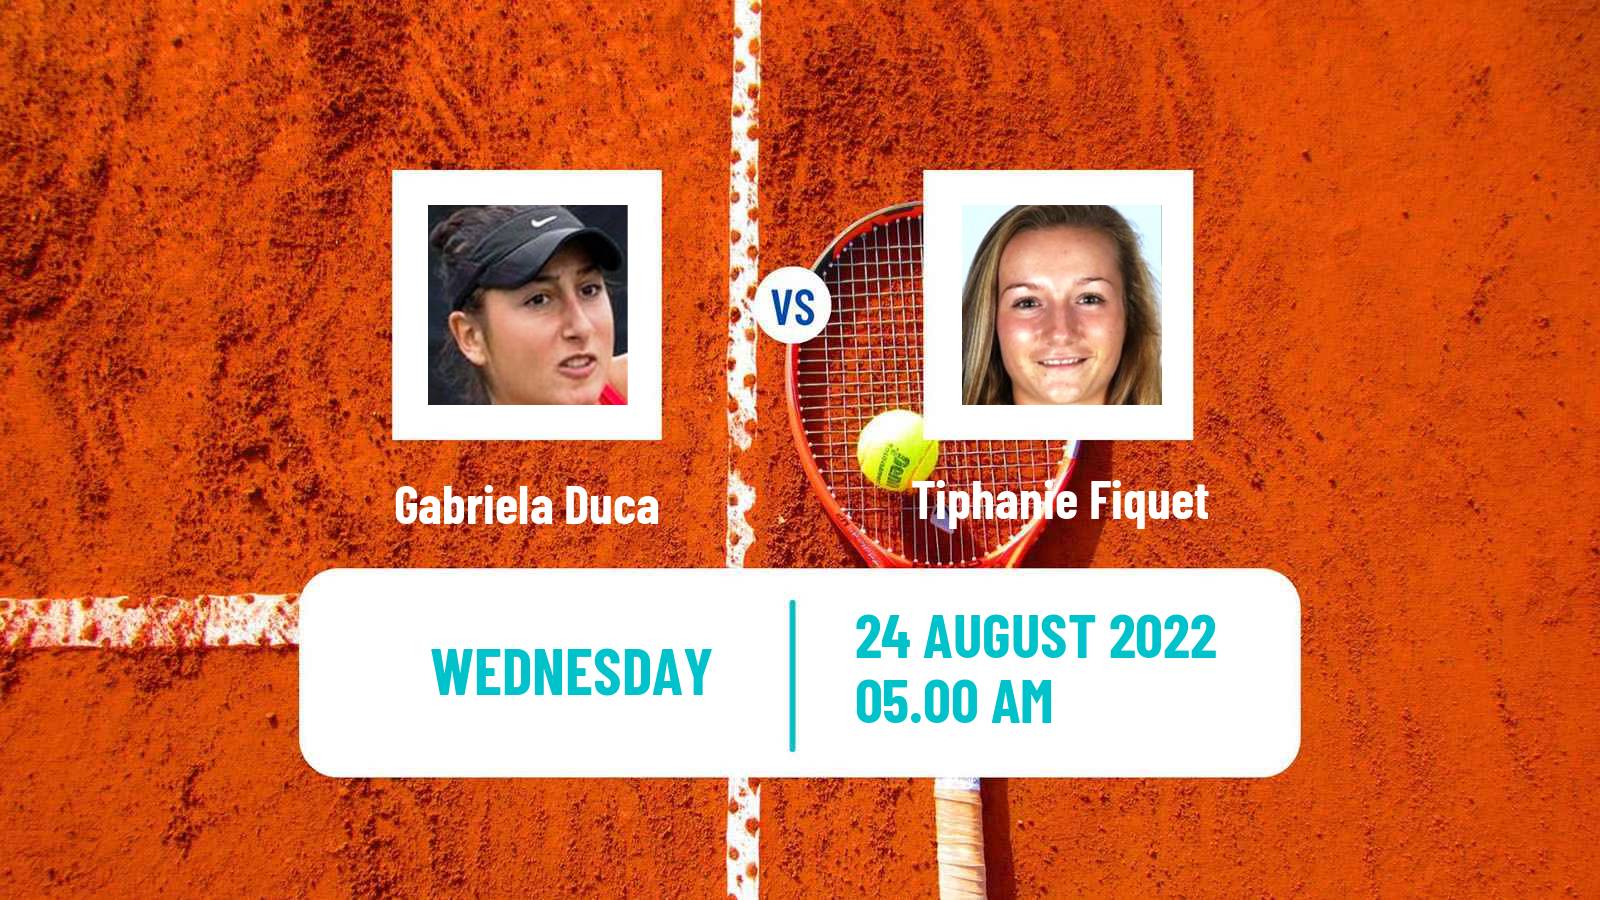 Tennis ITF Tournaments Gabriela Duca - Tiphanie Fiquet